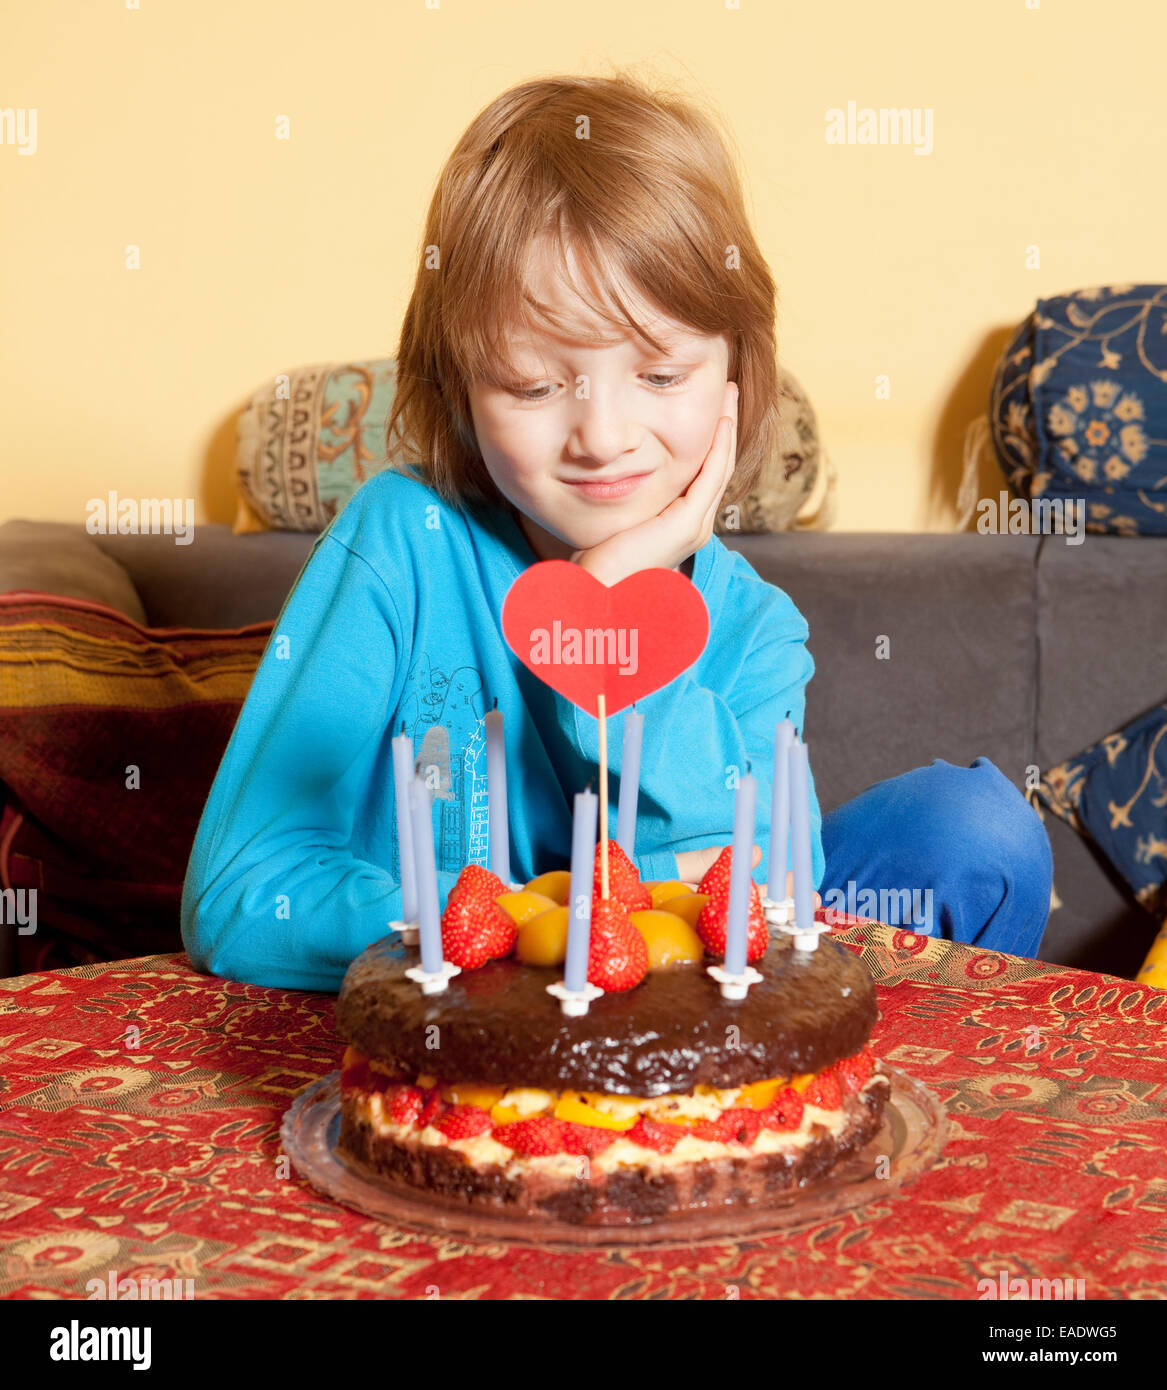 Garçon aux cheveux blonds regardant son gâteau d'anniversaire Banque D'Images